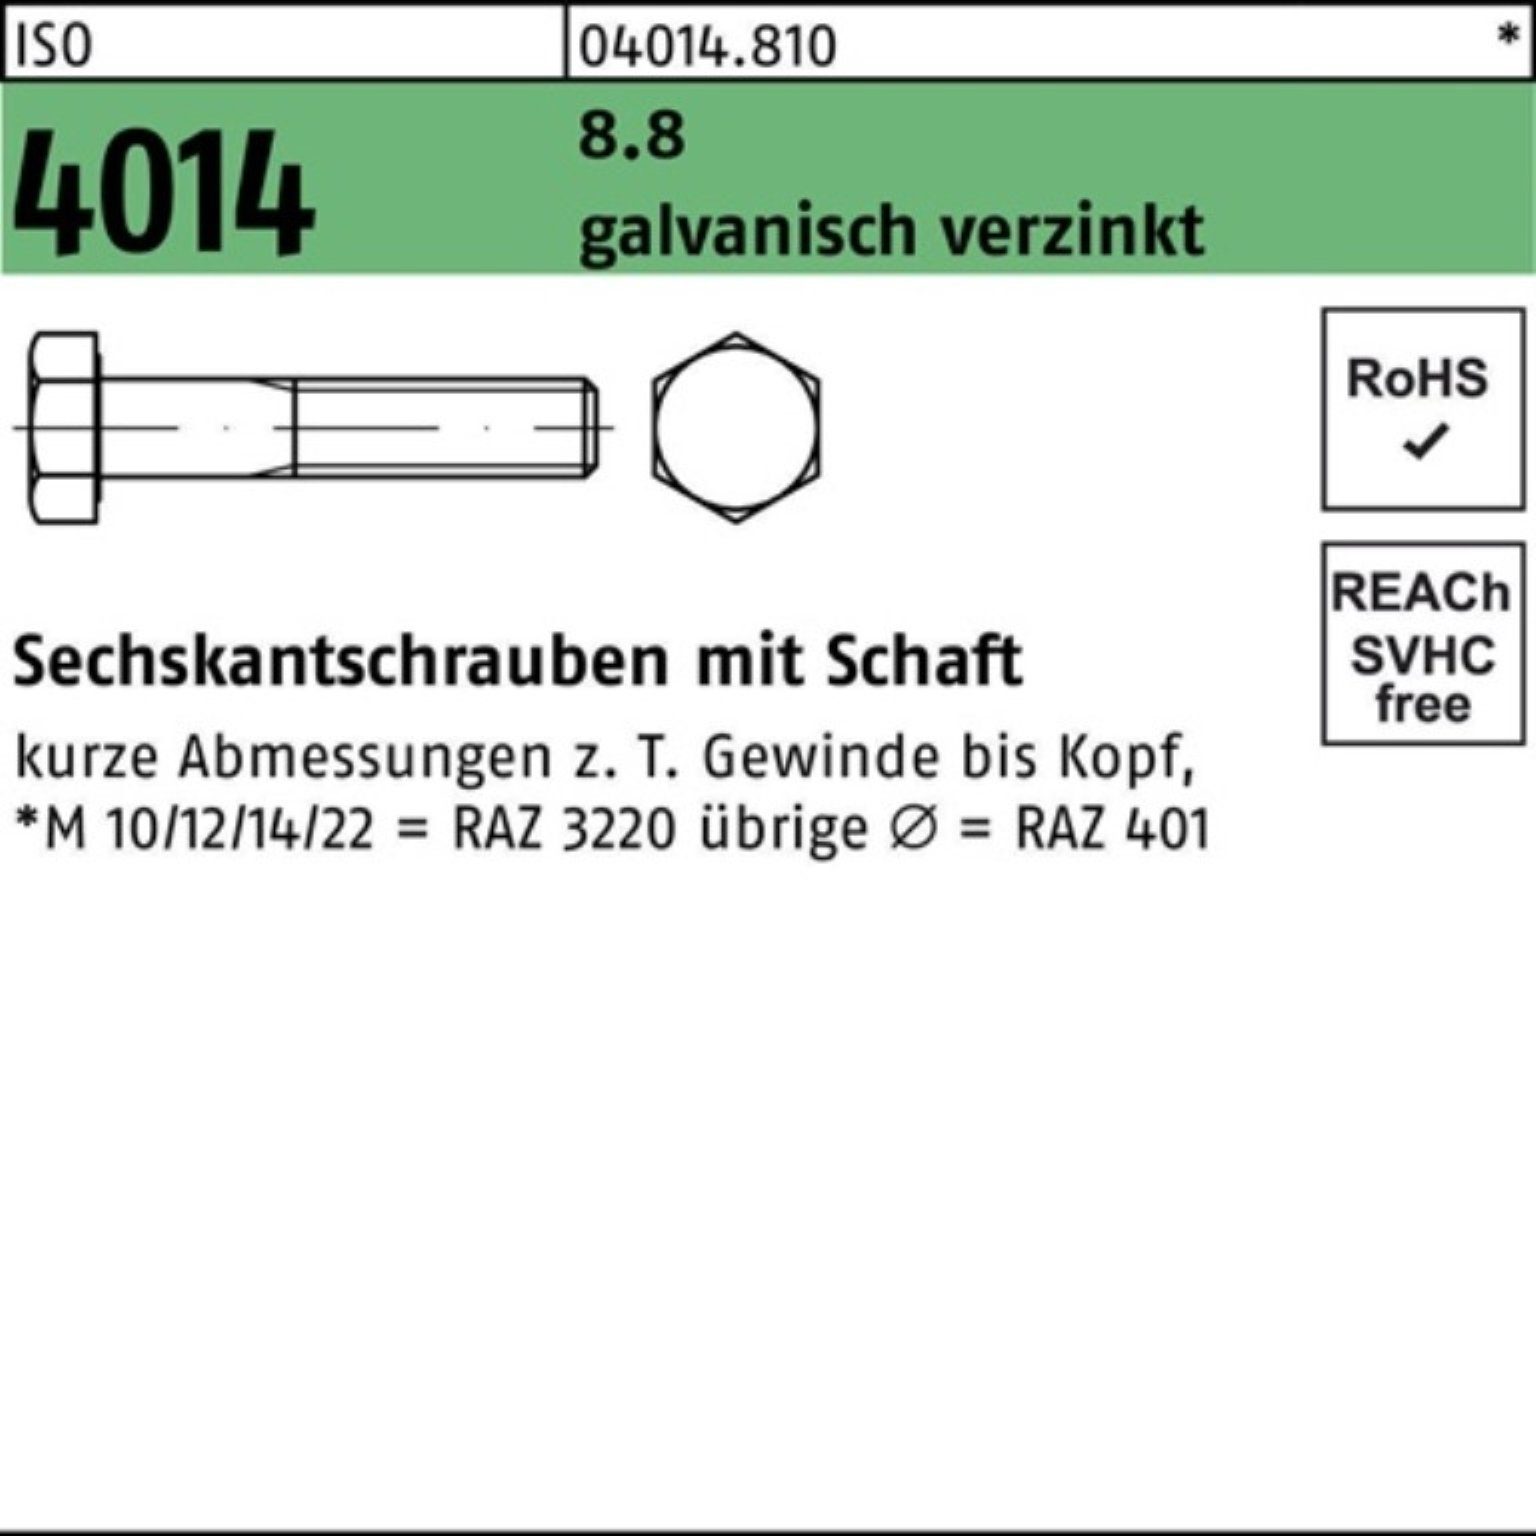 Bufab Sechskantschraube 100er Pack 160 8.8 Schaft Sechskantschraube M30x 1 4014 ISO galv.verz